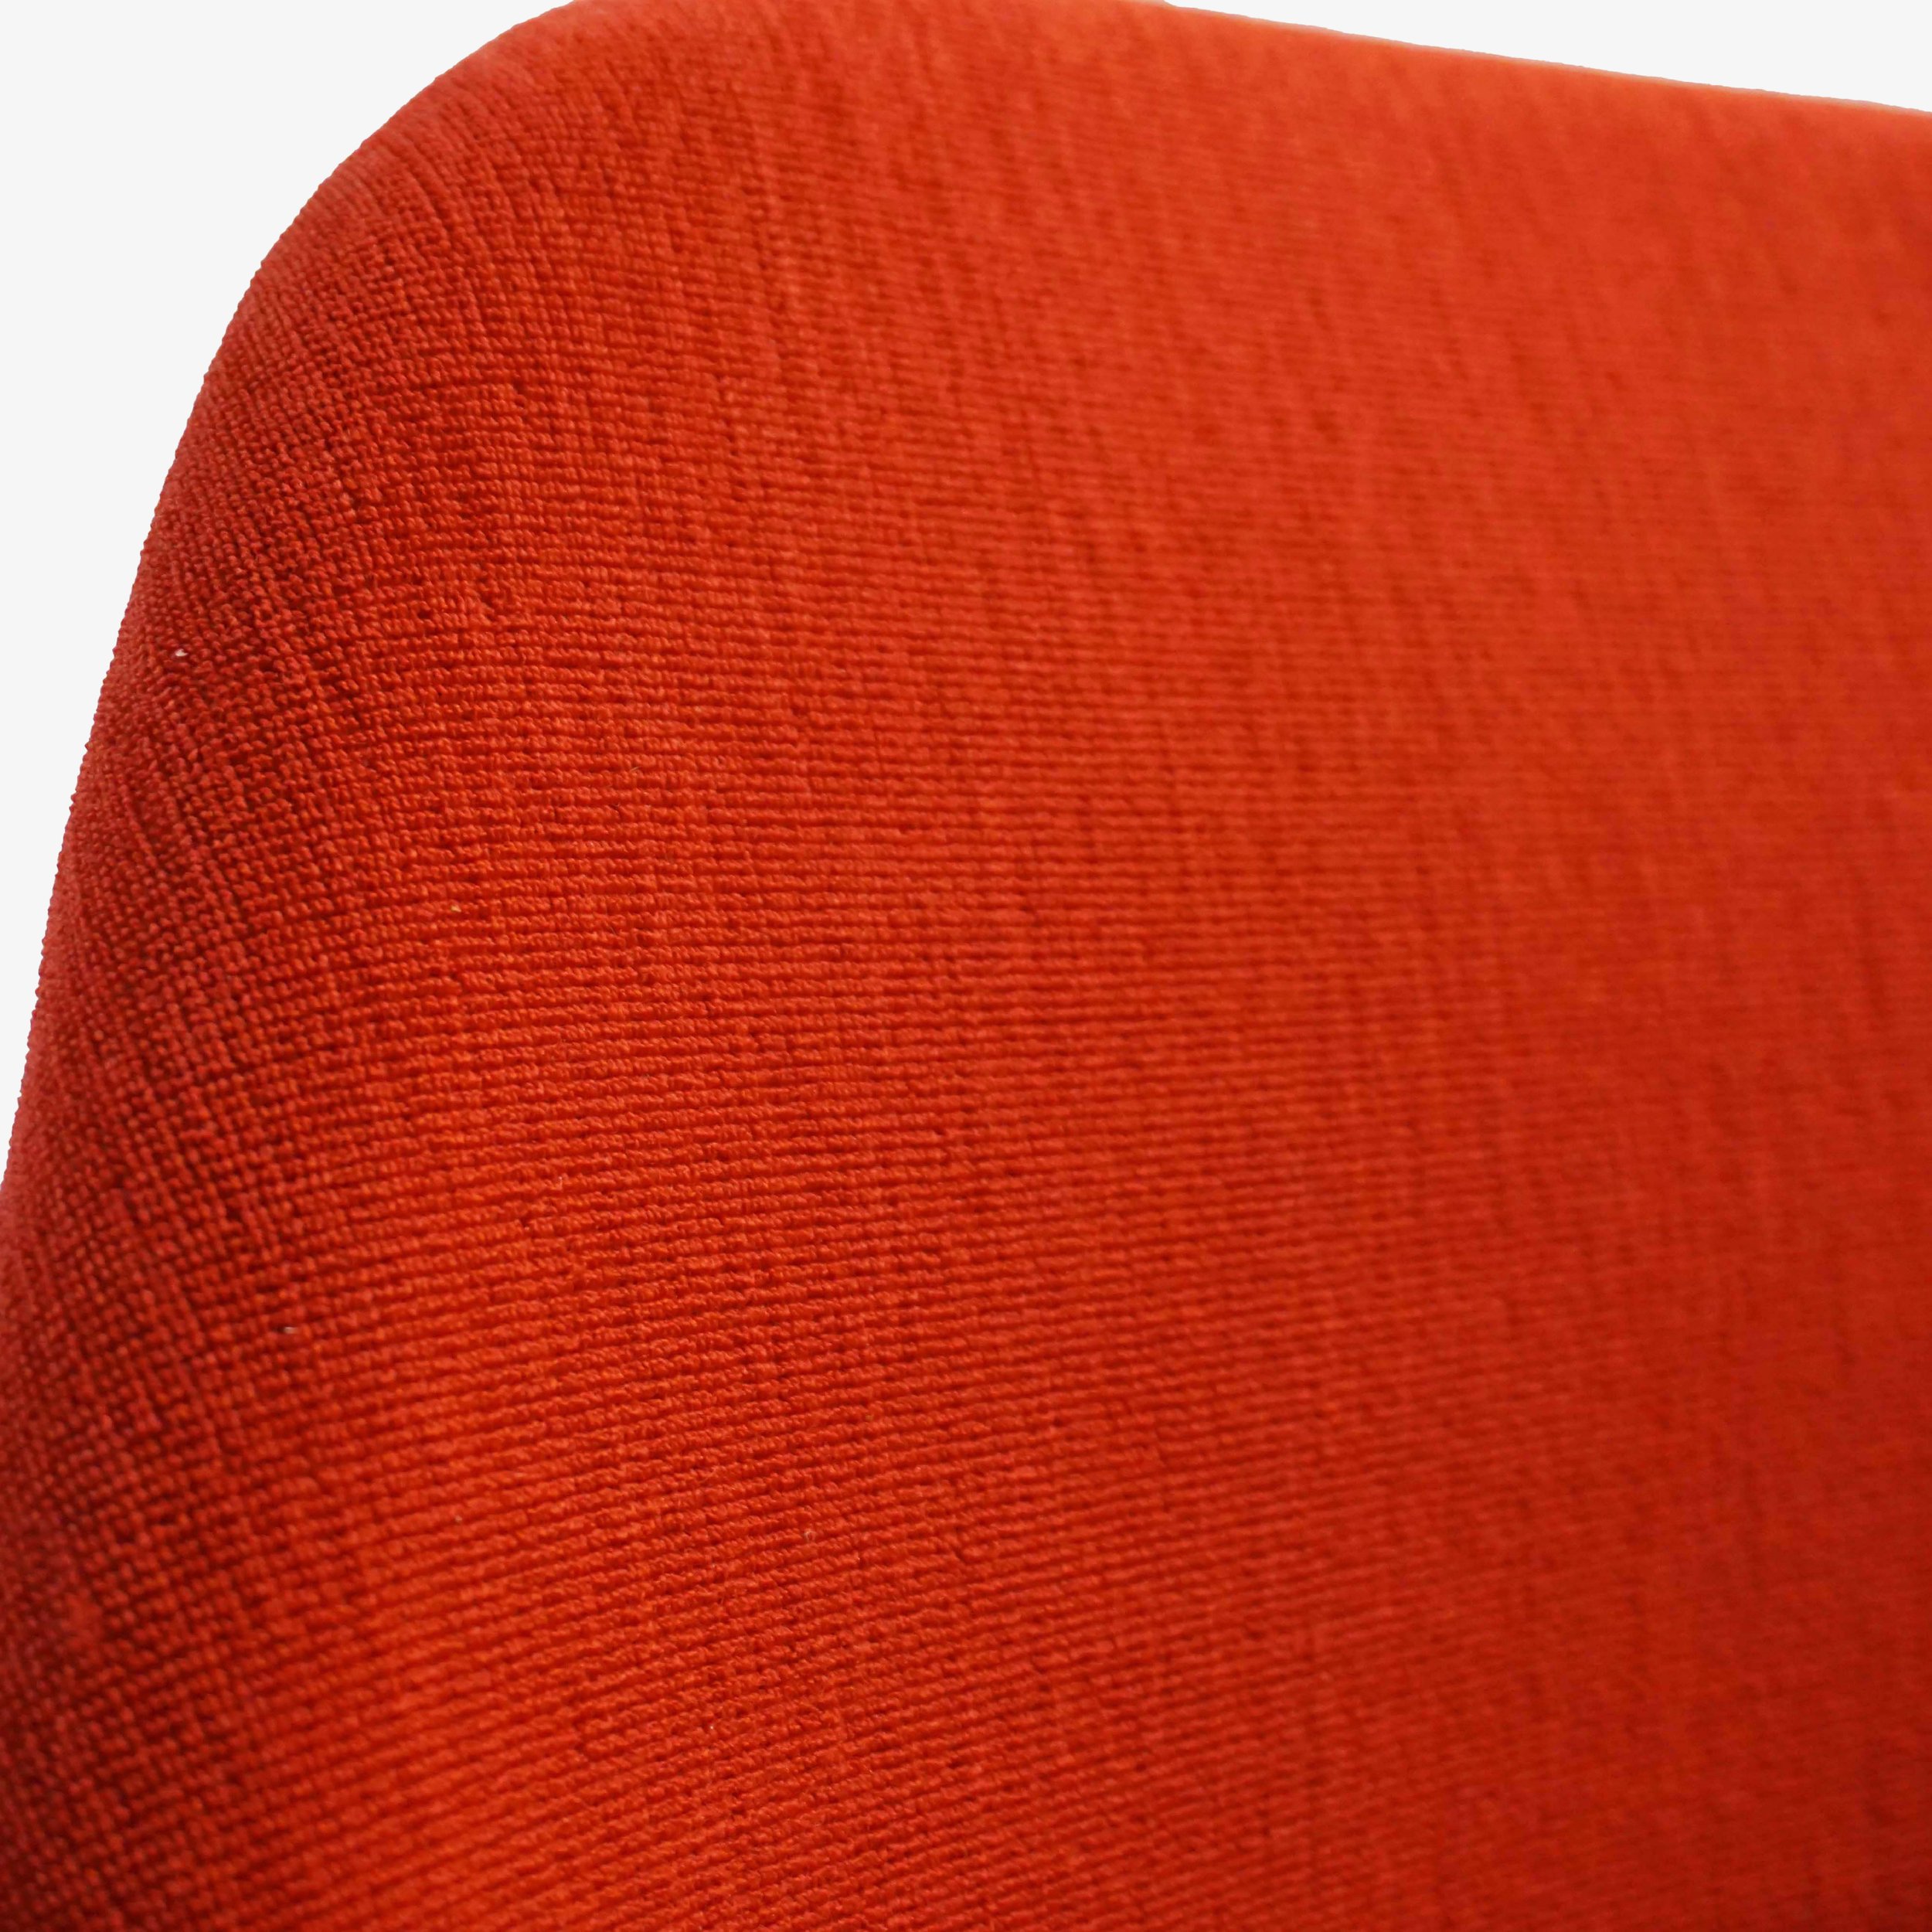 Saarinen Side Chair in Red5.jpg